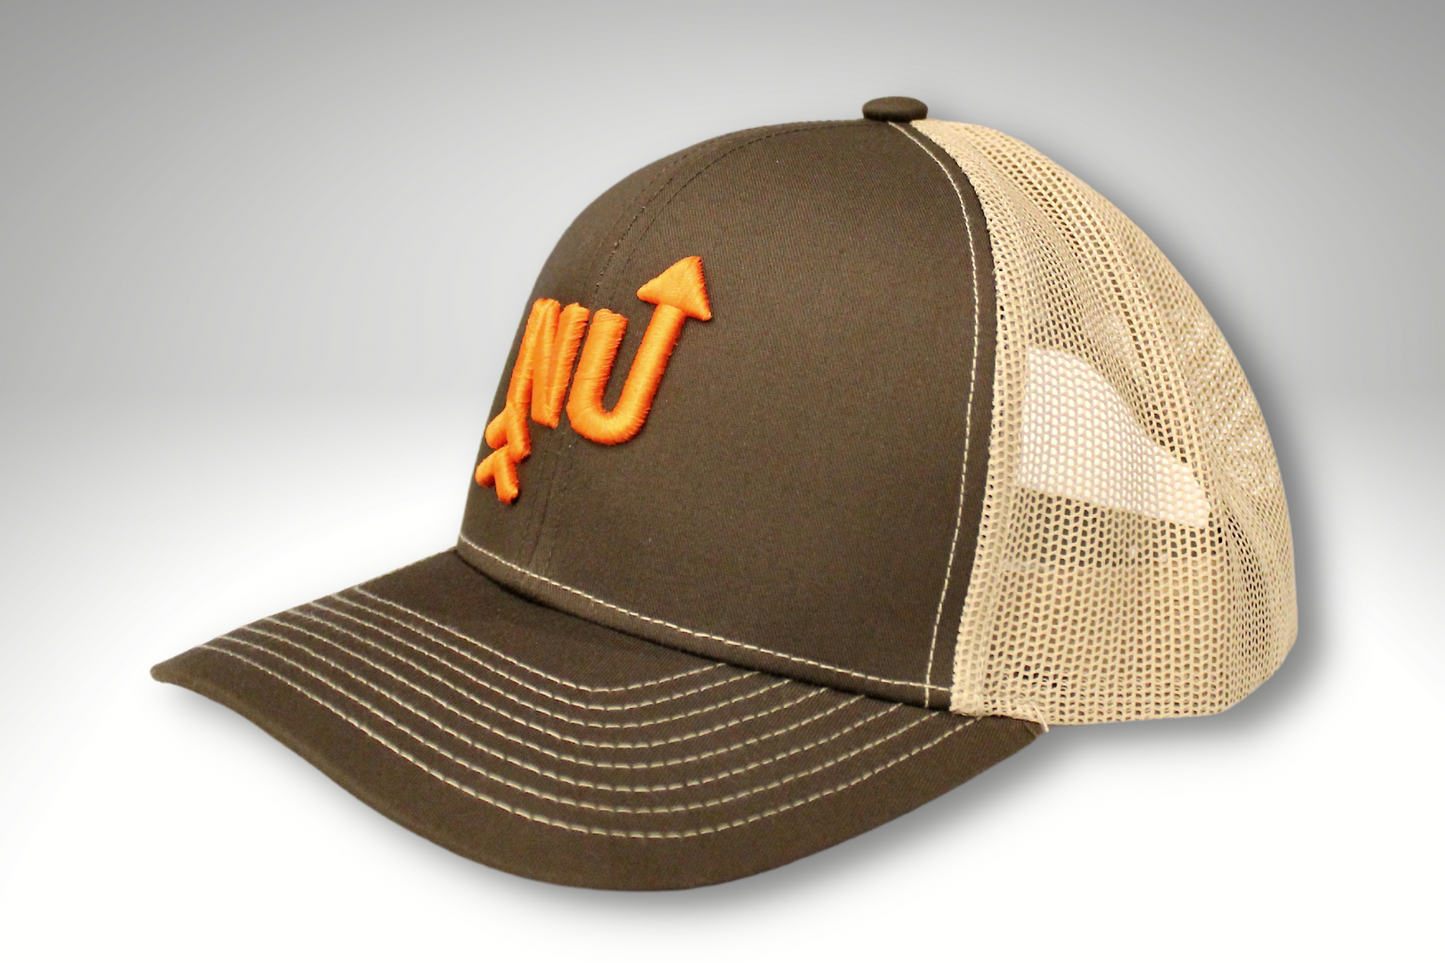 "NU" Stitched Trucker Hat